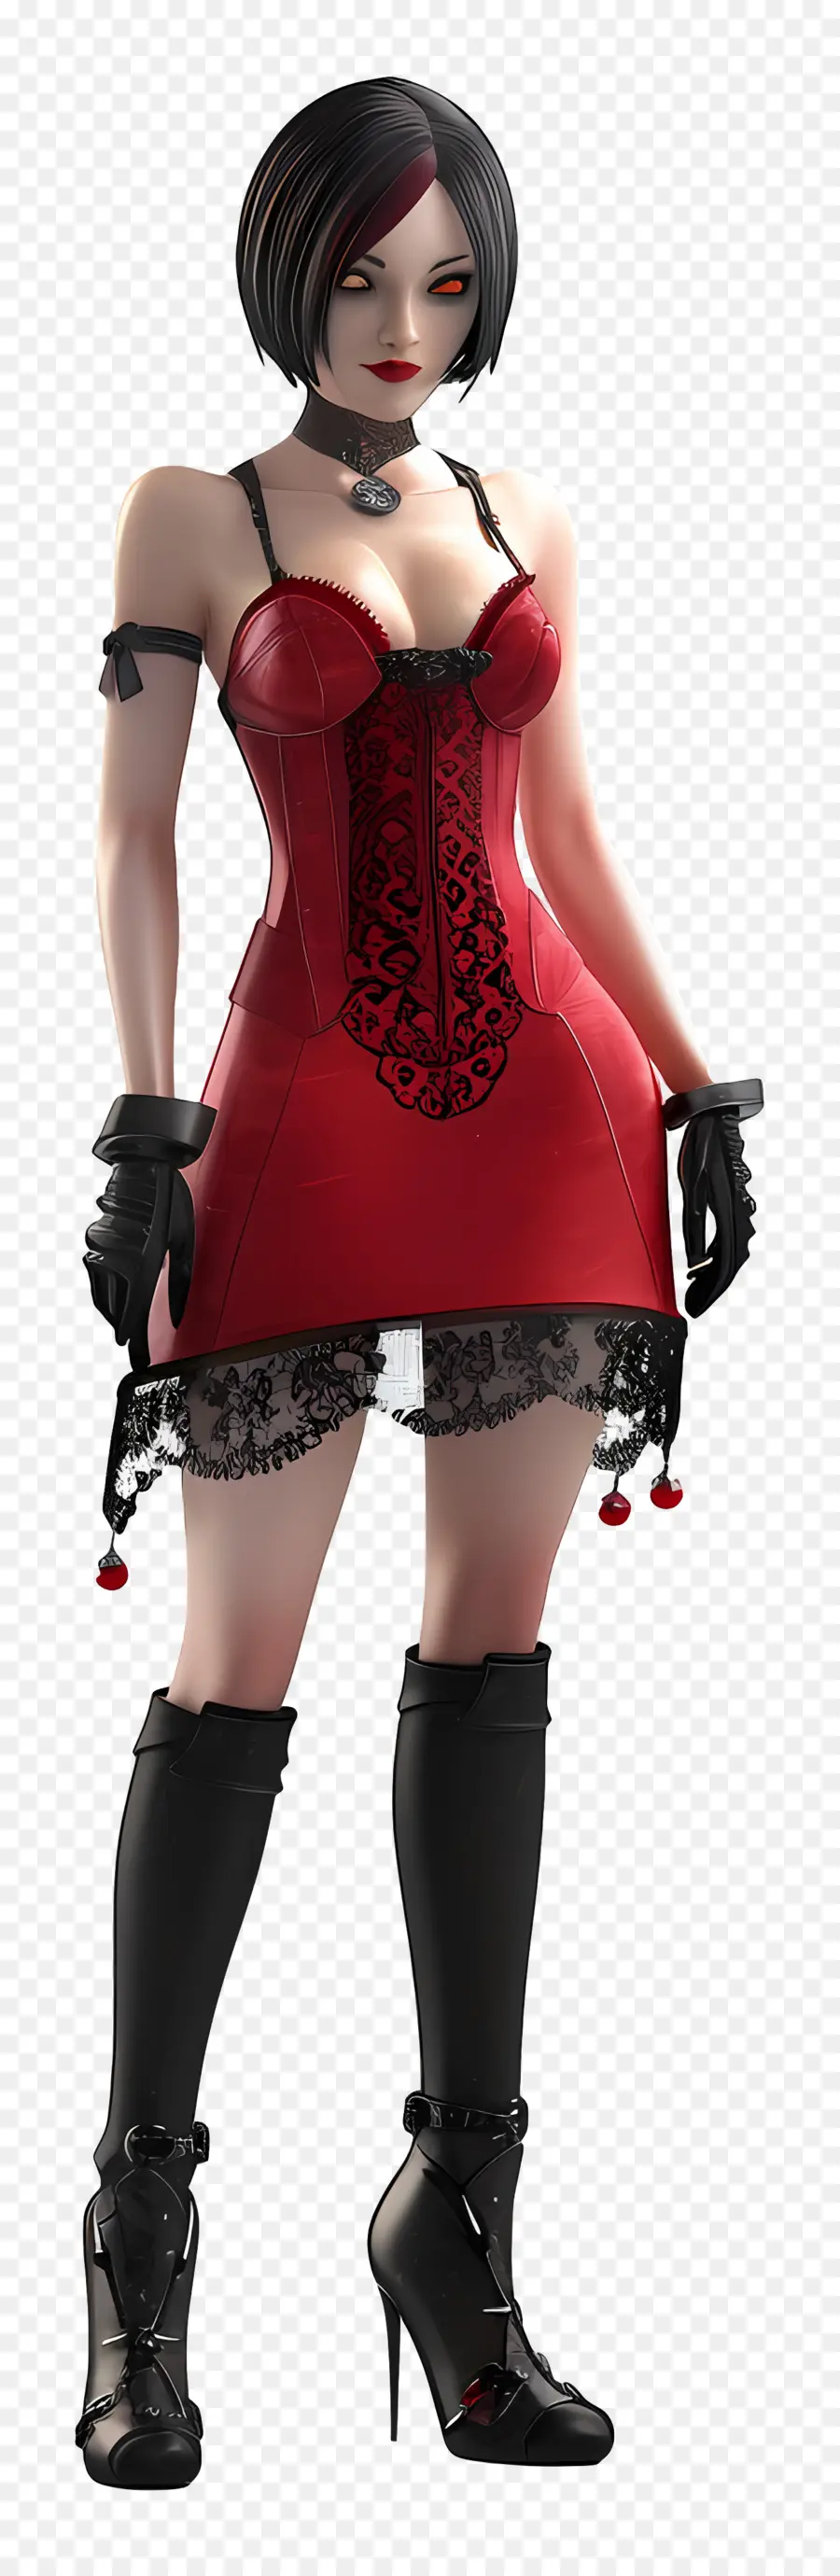 ada wong figure red corset dress high-heeled boots black gloves blonde hair